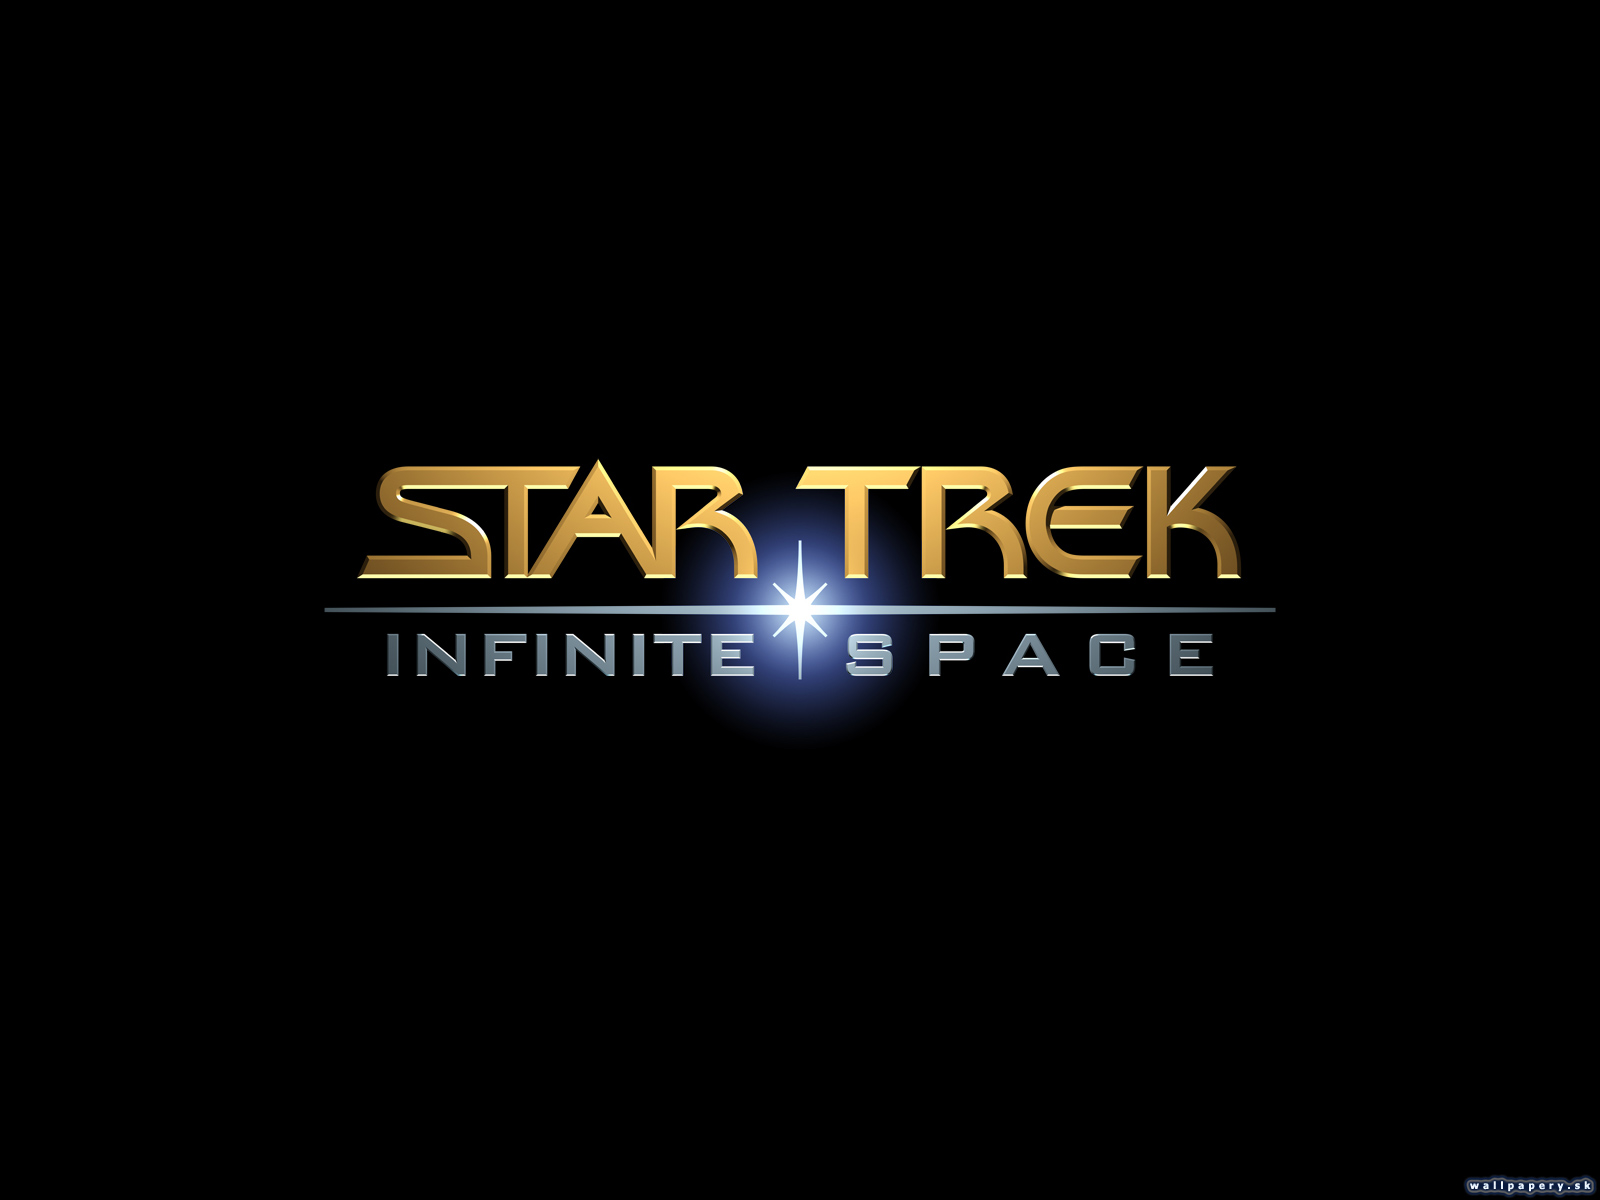 Star Trek: Infinite Space - wallpaper 2